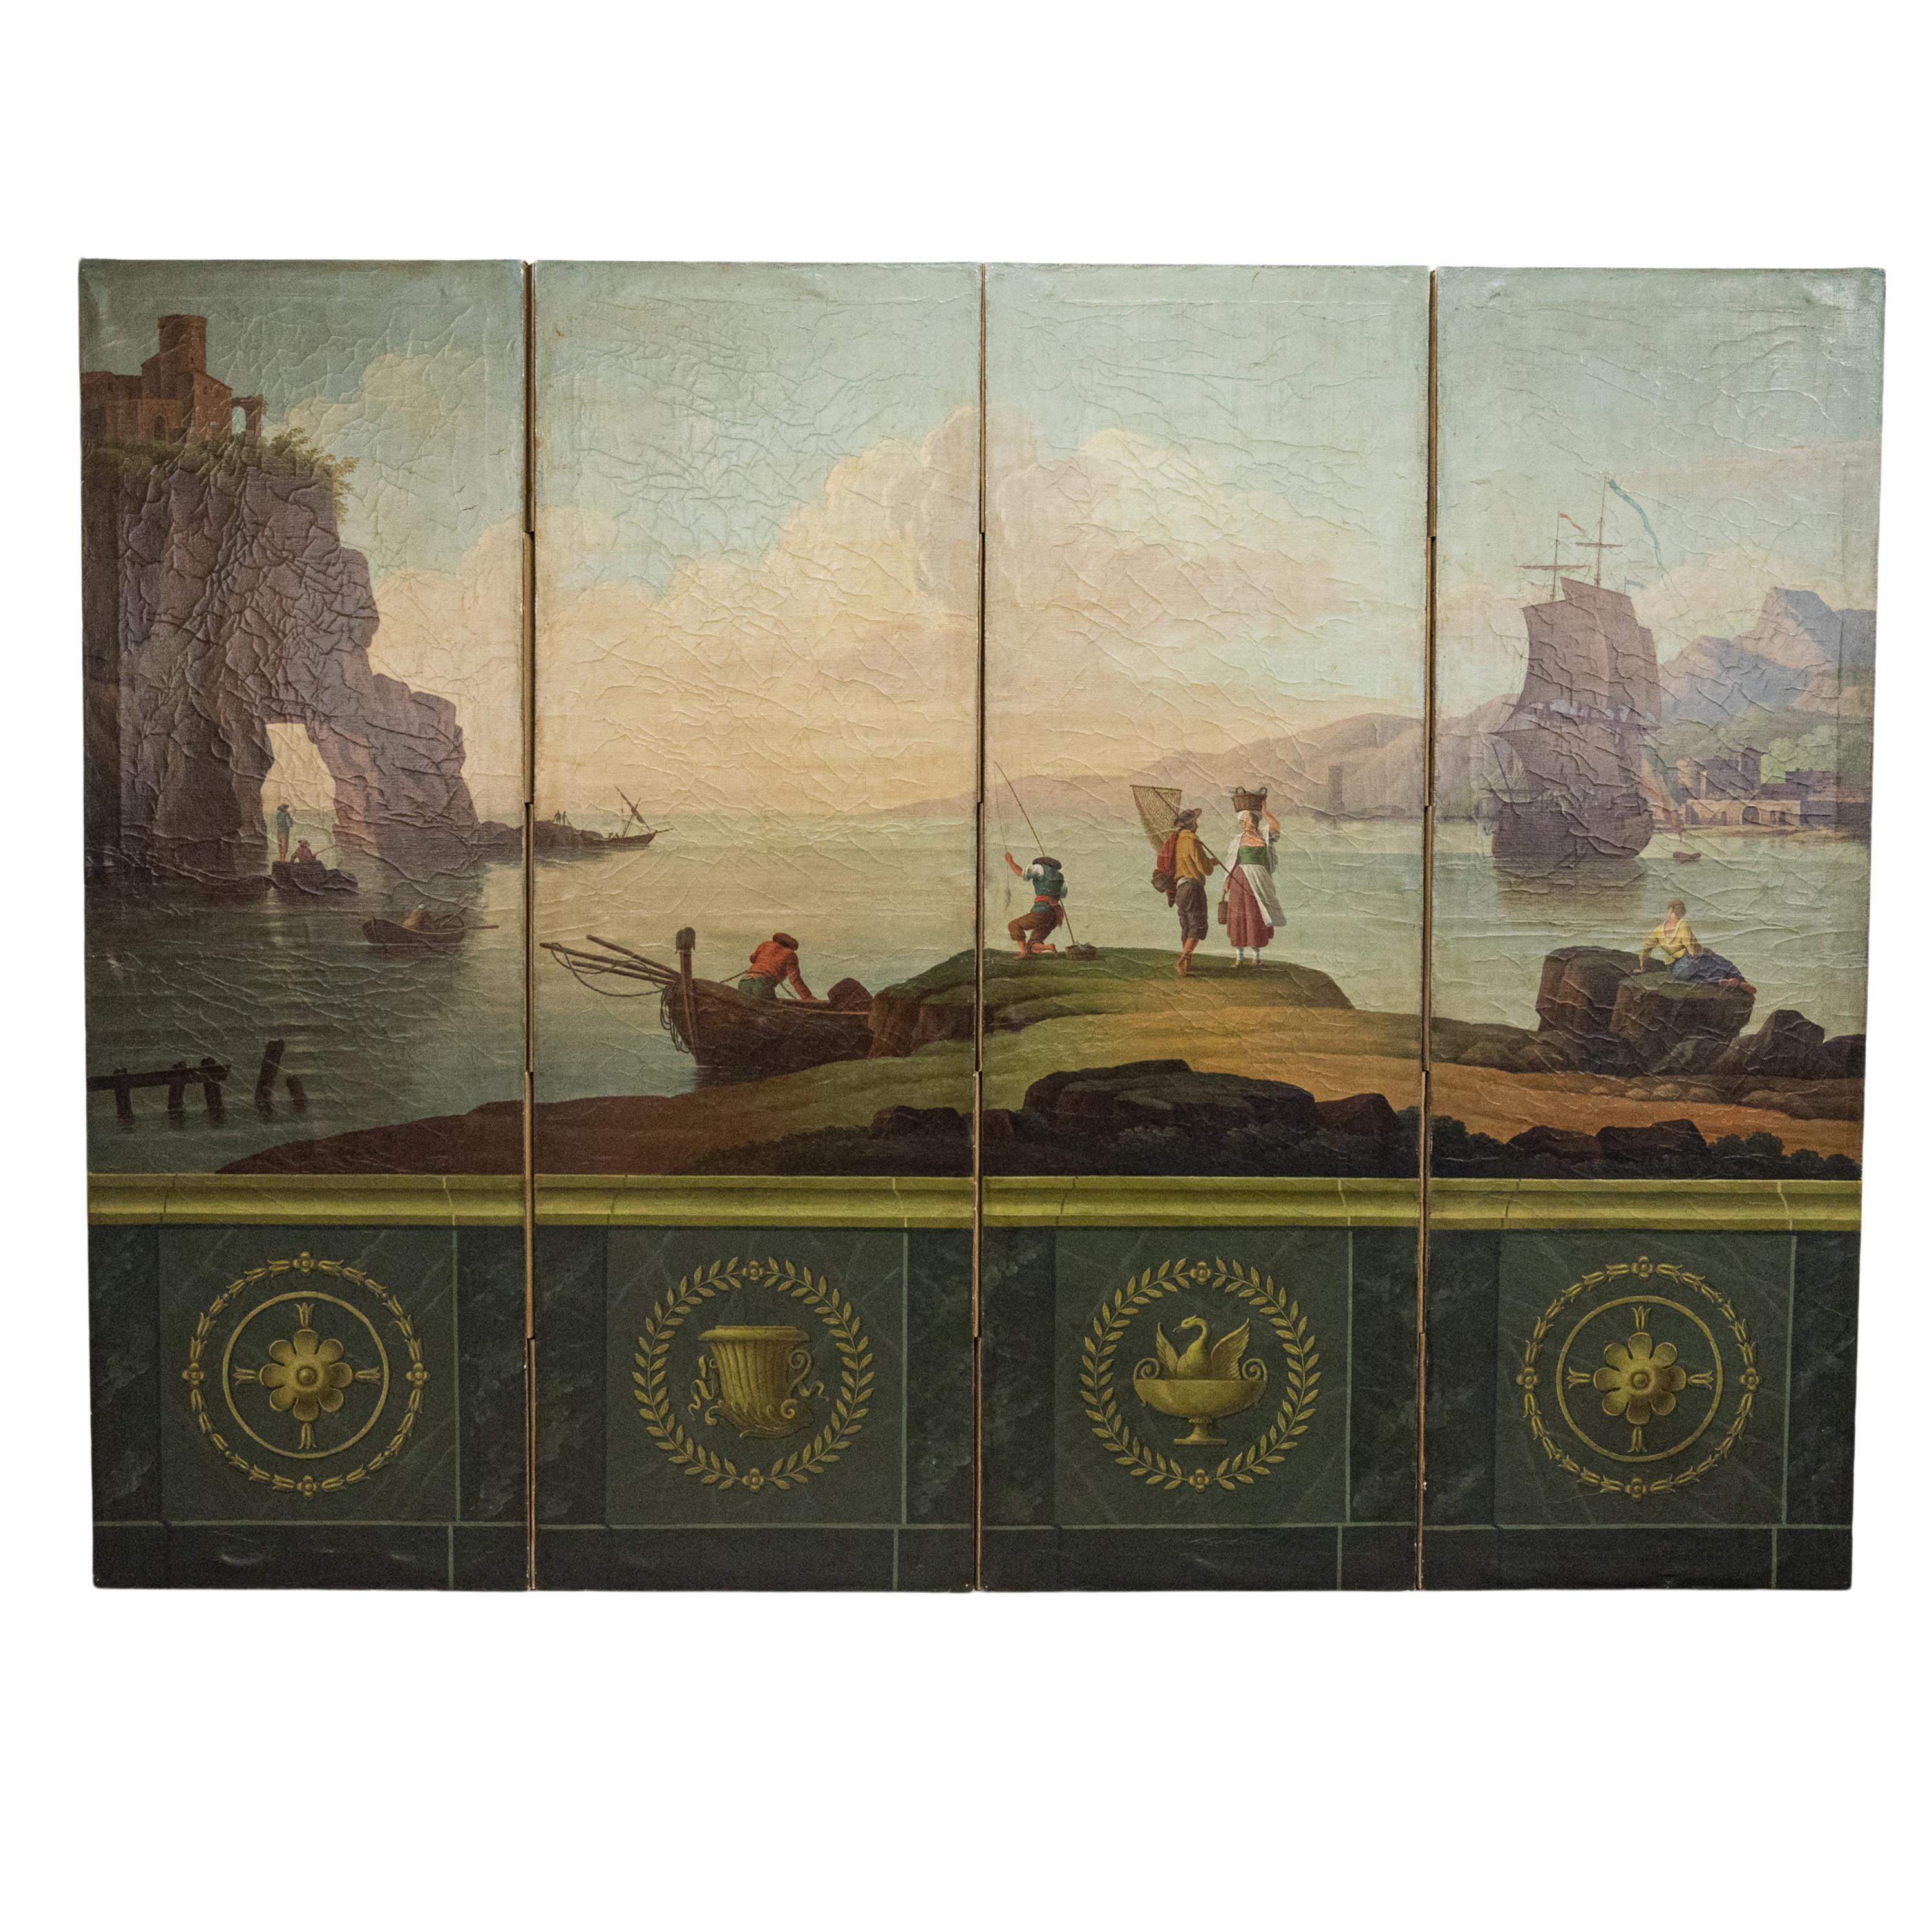 Très belle et spectaculaire huile sur toile italienne ancienne pour écran/division de pièce, vers 1860.
Le paravent quadruple est très finement peint d'une scène de pêche/port italienne, la base est peinte de carreaux en trompe-l'oeil avec des